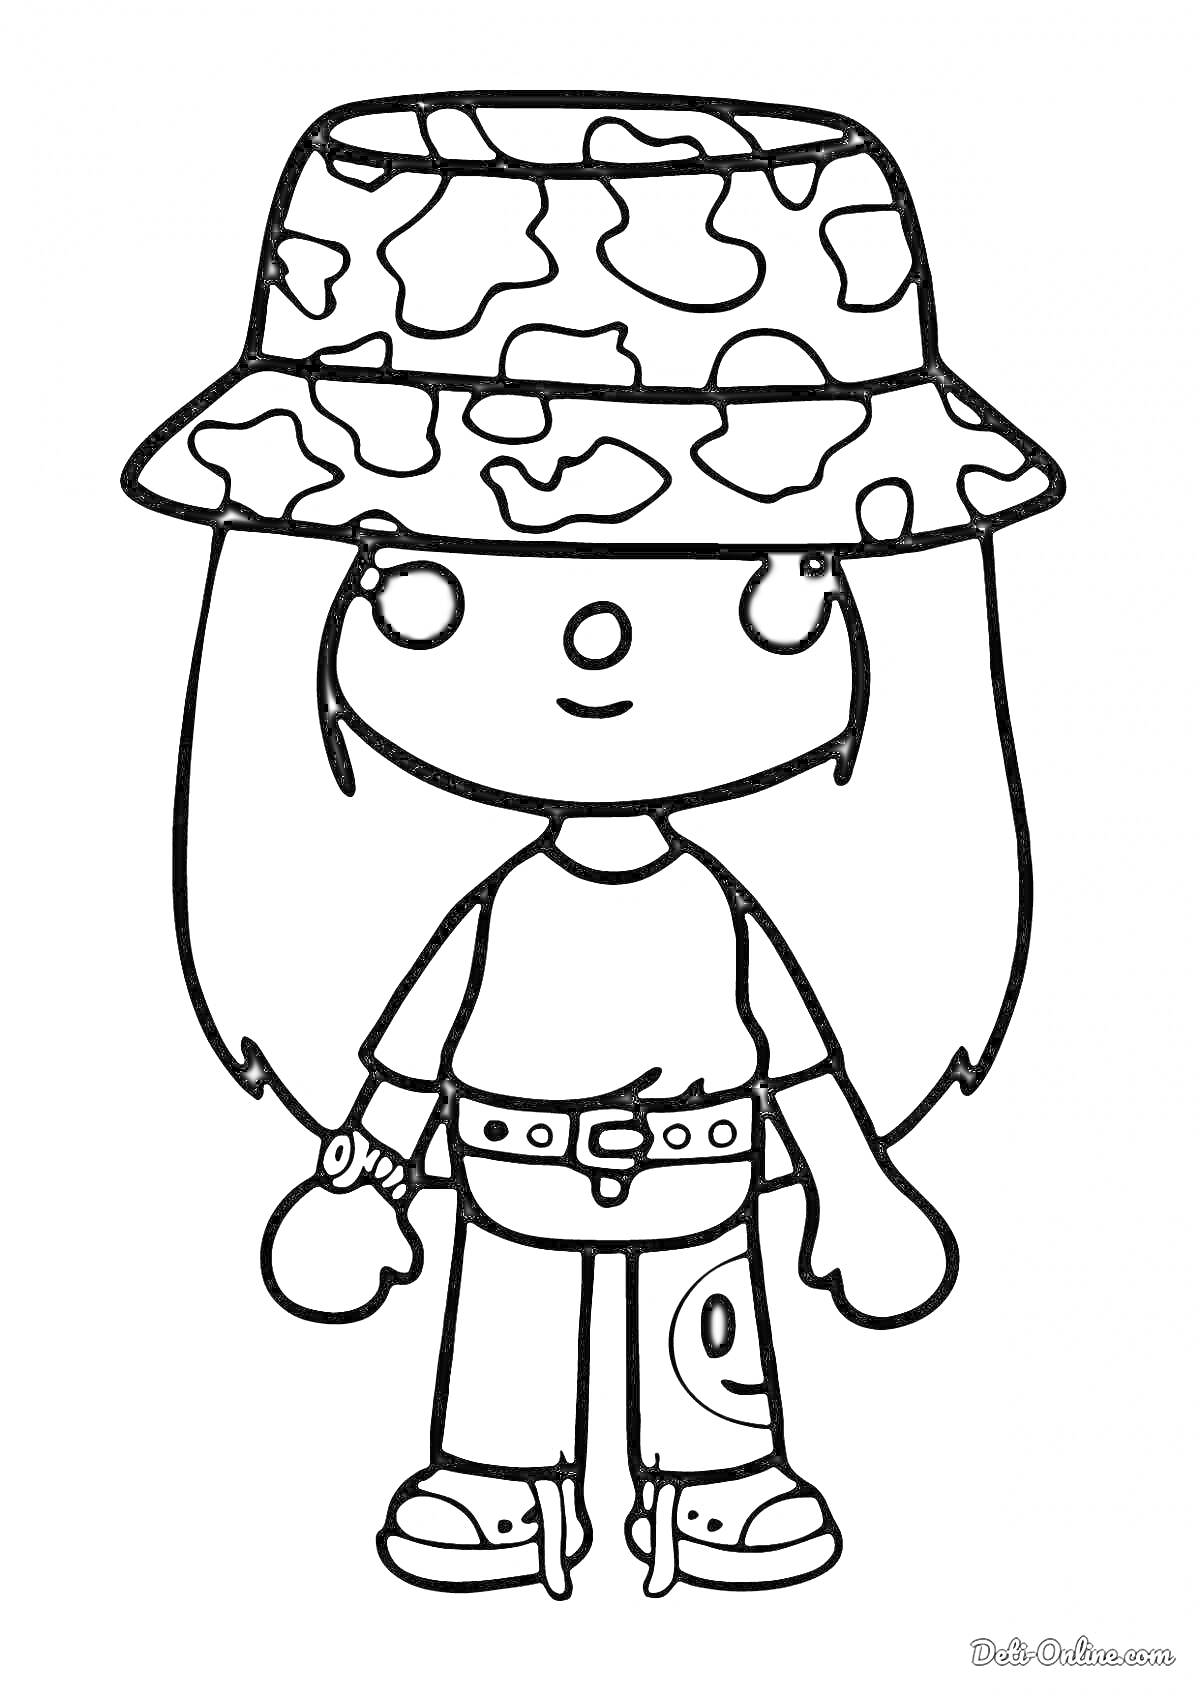 Раскраска Девочка с длинными волосами в панамке с камуфляжным узором, футболкой, поясом с пряжкой и джинсами с рисунком, держащая маленький предмет в руке